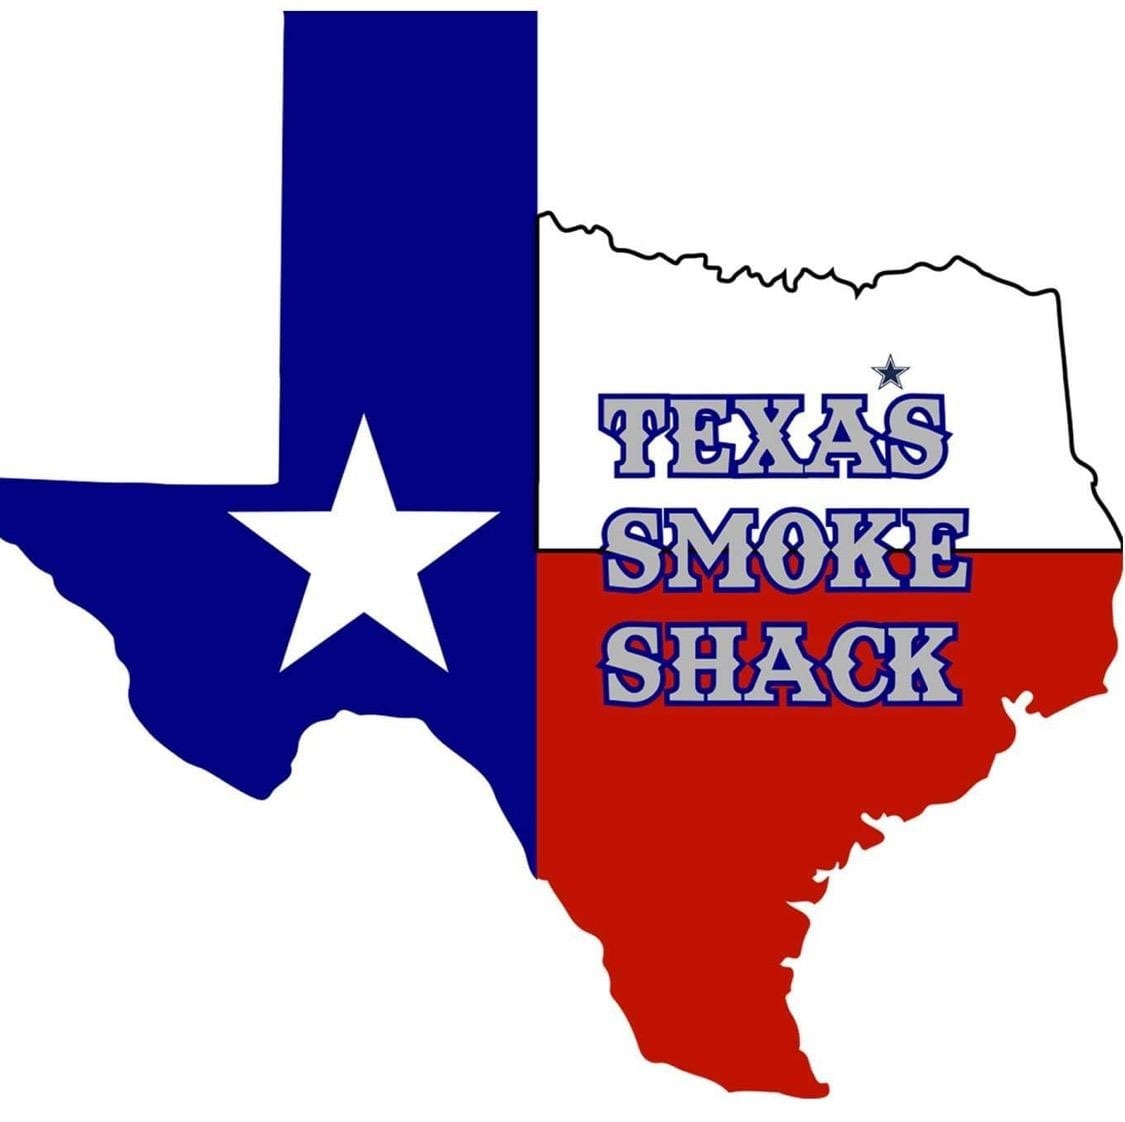 BBQ TEXAS SMOKE SHACK